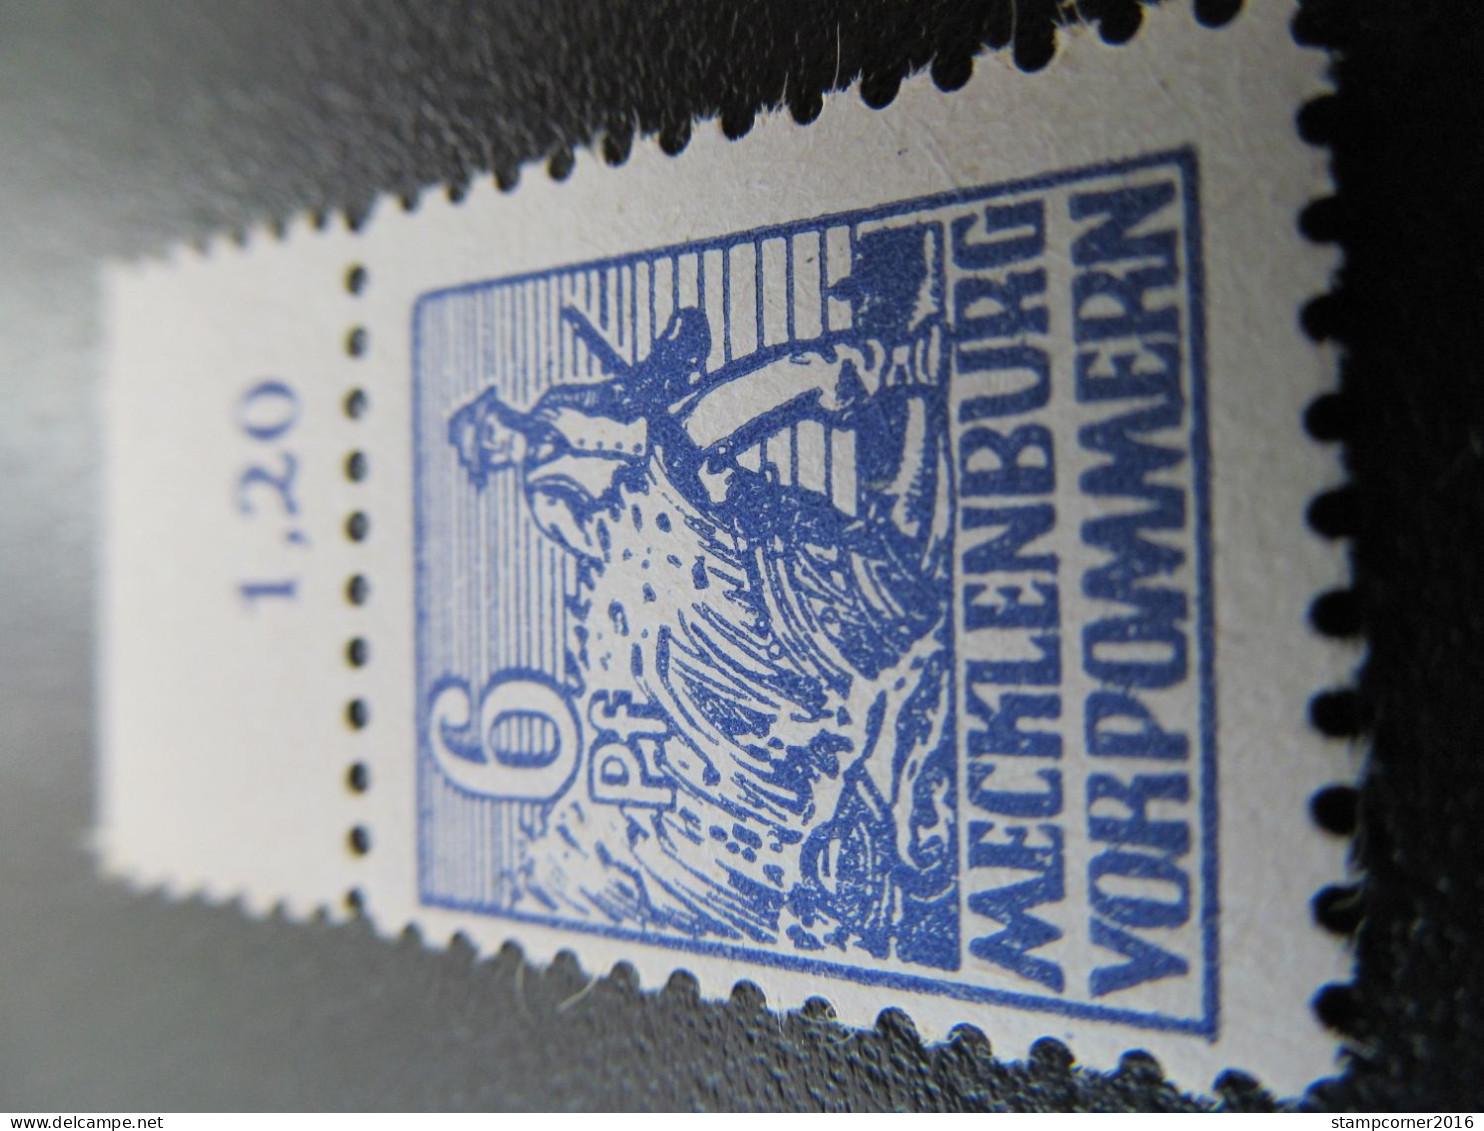 SBZ Nr. 33xb, 1946, Postfrisch, BPP Geprüft, Mi 17€ *DEK105* - Ungebraucht